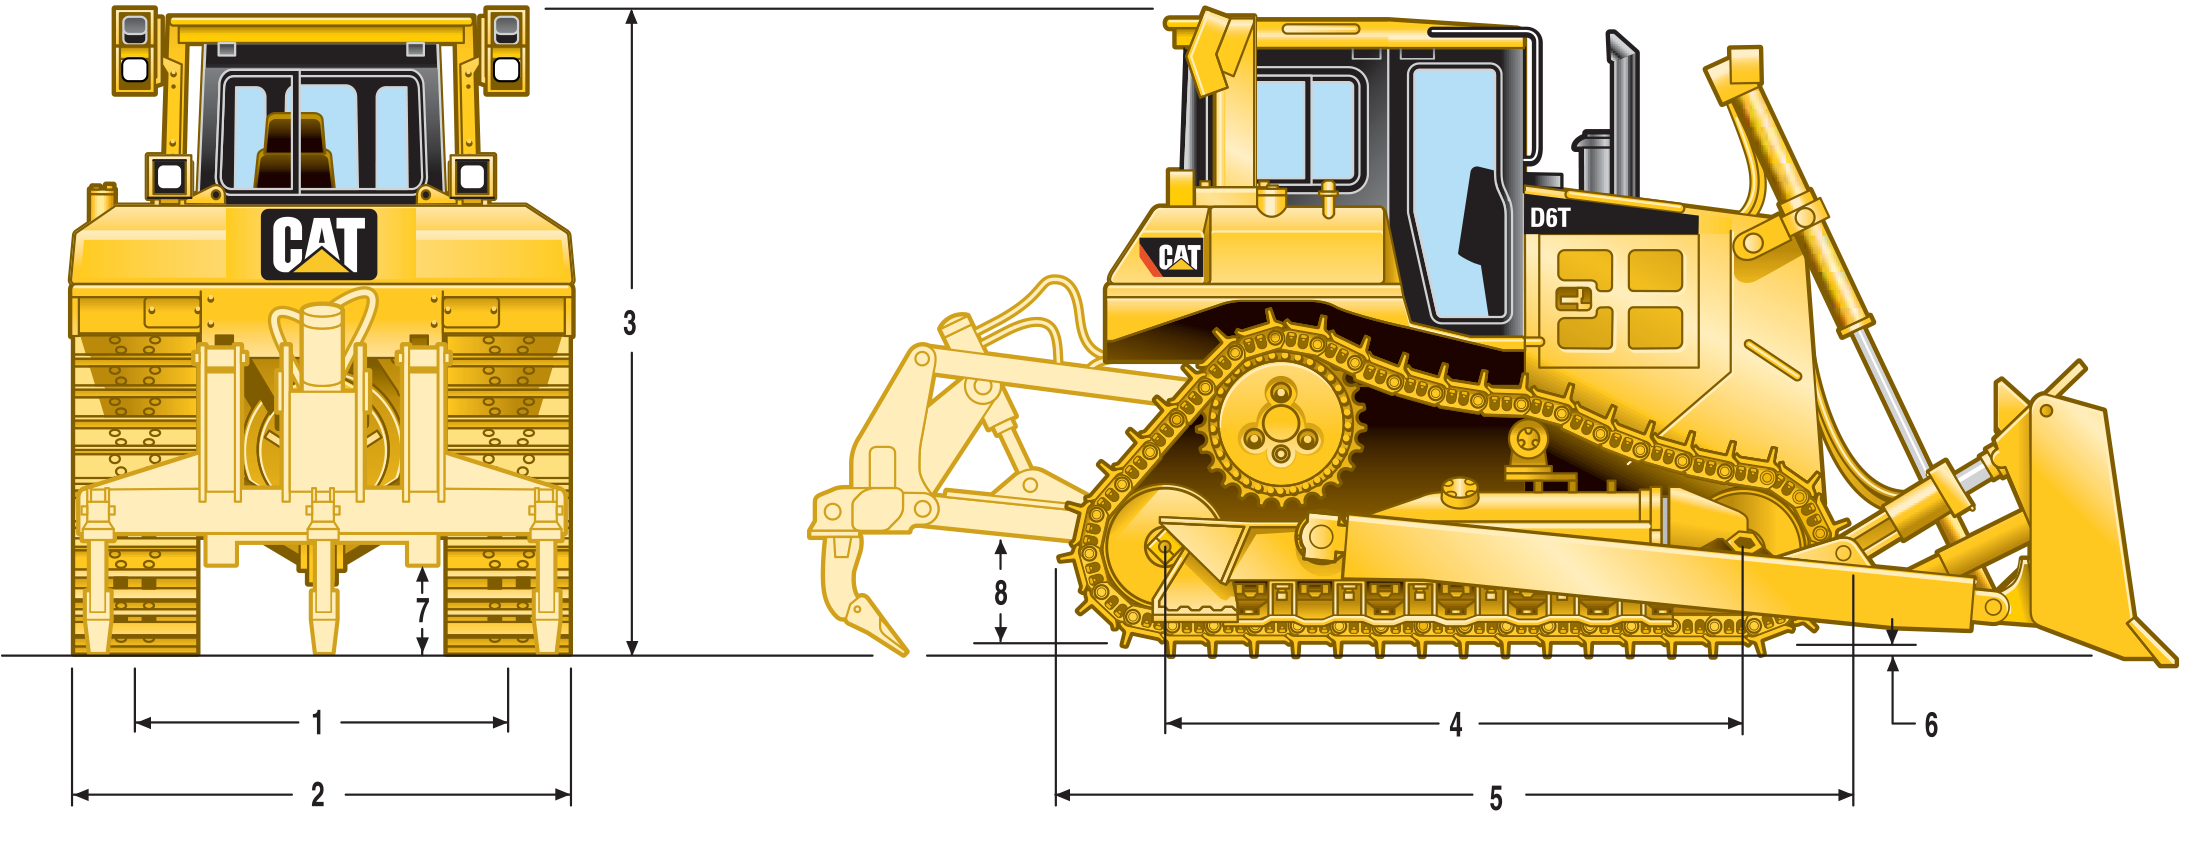 Технические характеристики бульдозера caterpillar d6r (cat)